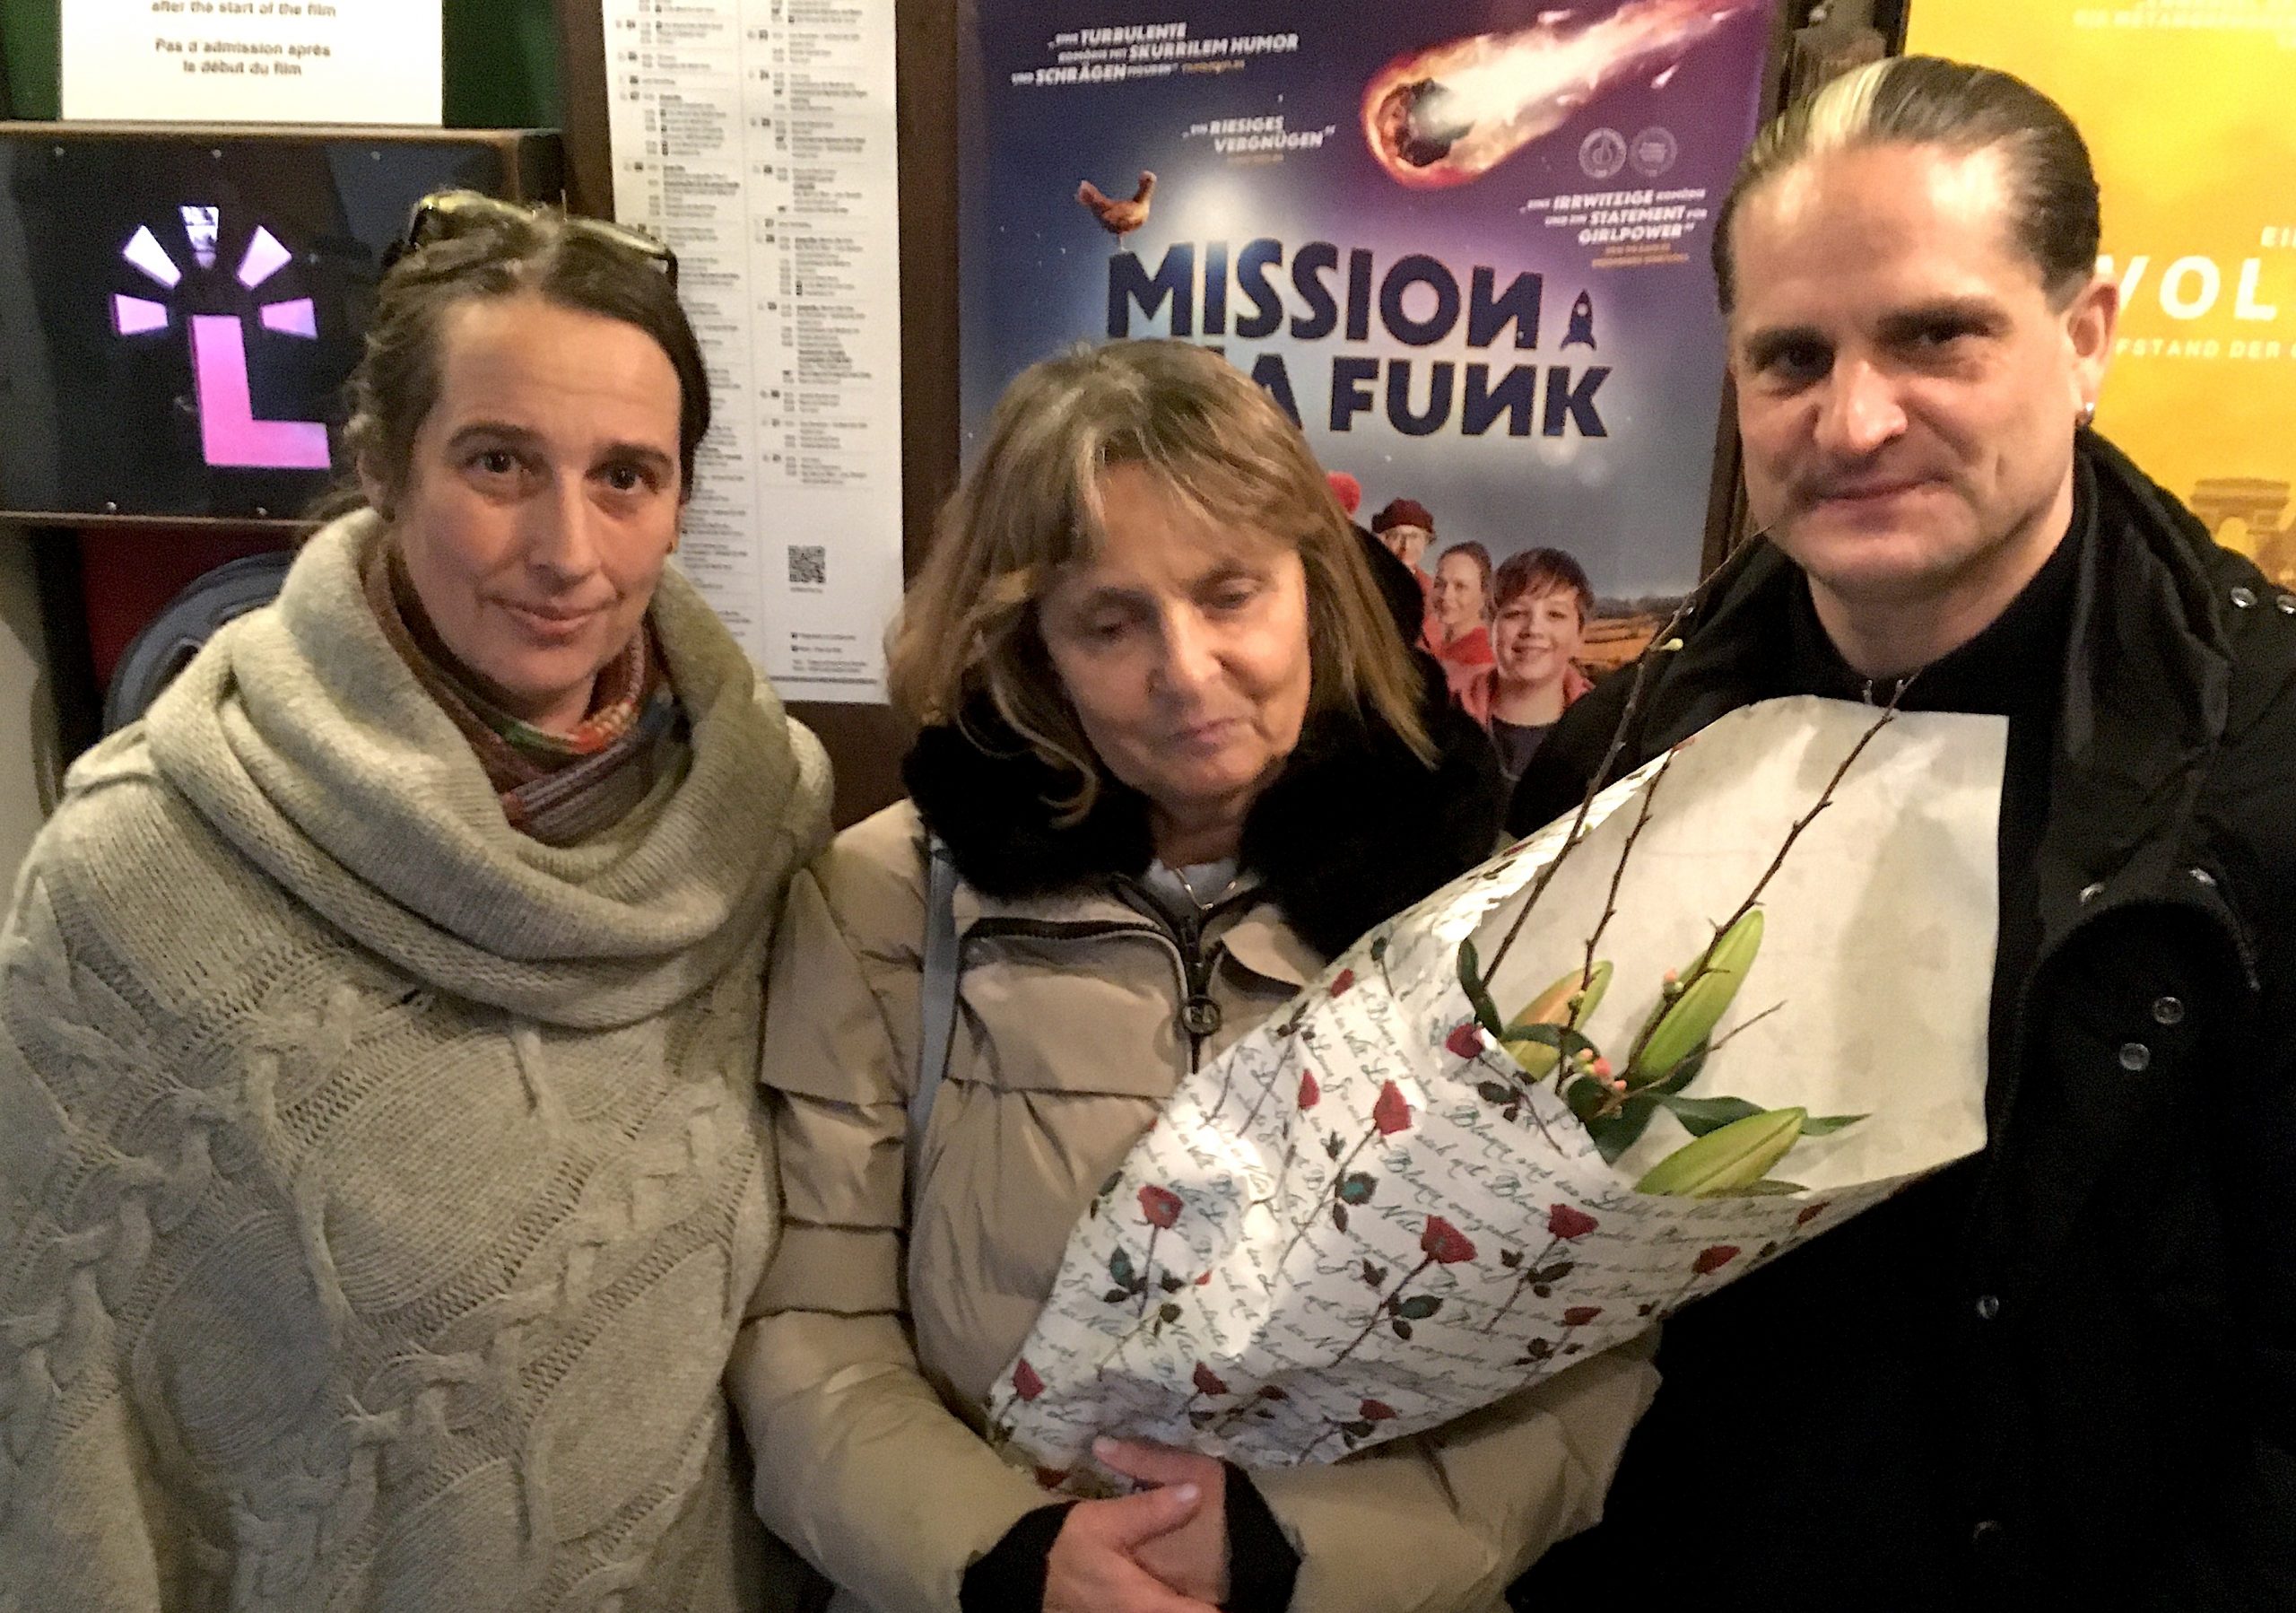 Die Autorin von Audiodeskriptionen Jutta Polić, die Blindgängerin und Andres Schüpdach von der Greta App stehen vor einer Wand im Lichtblick-Kino. Hinter ihnen das Filmplakat von „Mission Ulja Funk“. Die Blindgängerin hält einen großen Blumenstrauß im Arm.